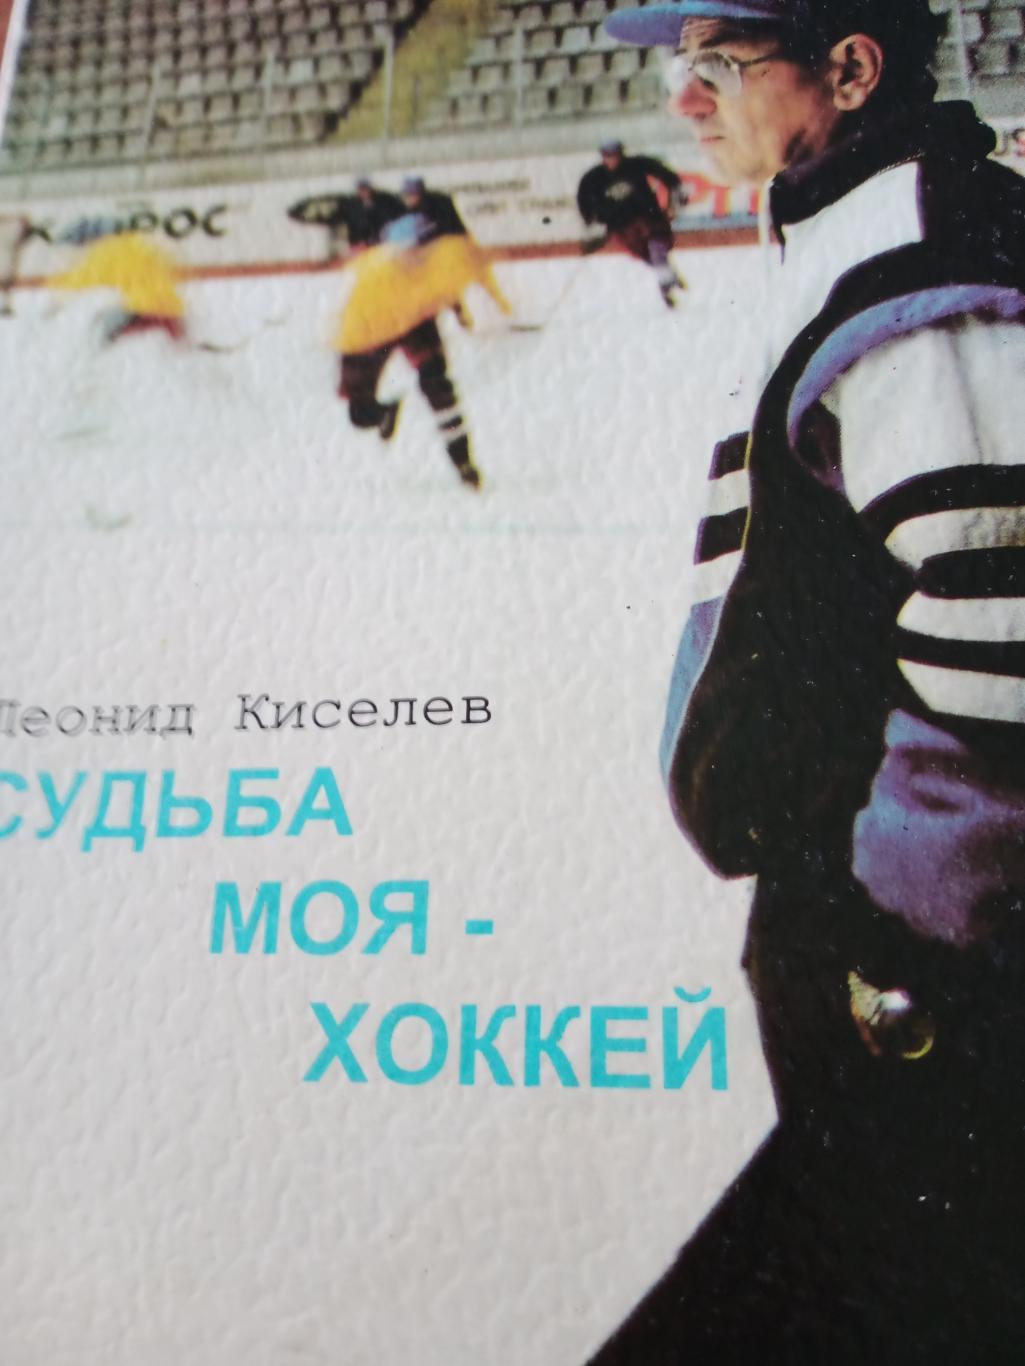 Леонид Киселев. Судьба моя - хоккей. Издано в Омске, 1995 год